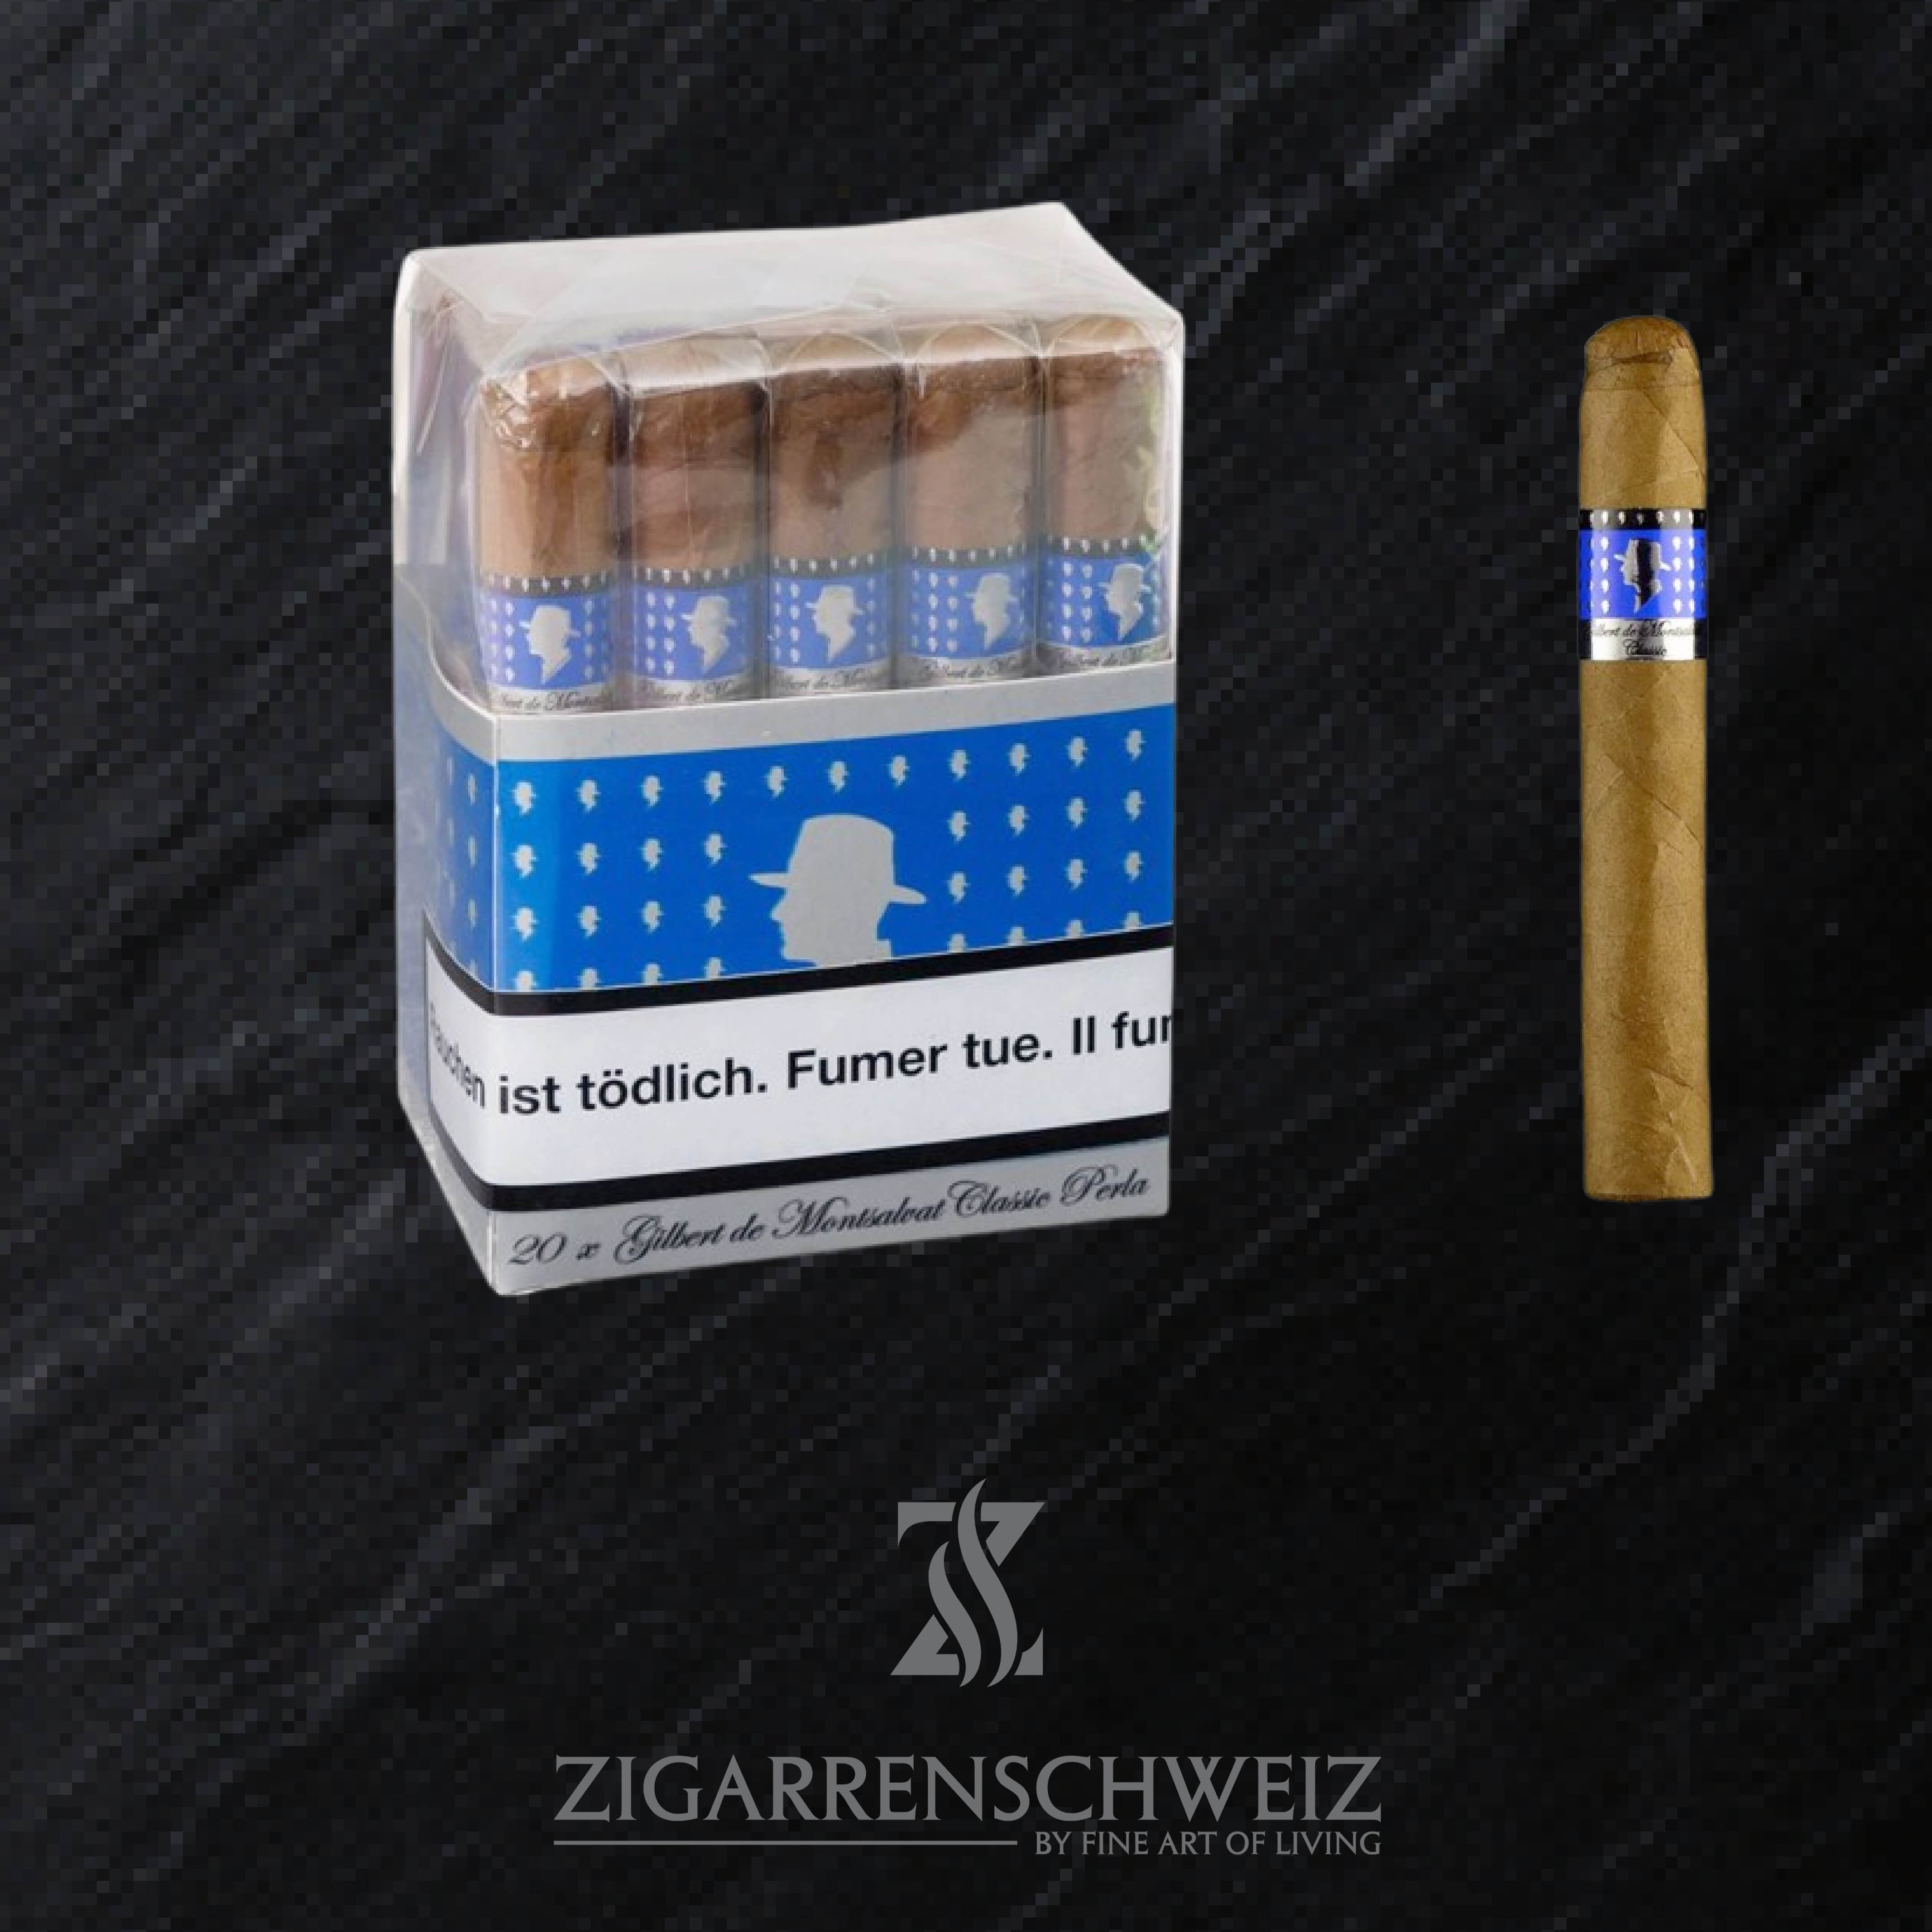 Gilbert de Montsalvat Classic Perla Zigarren Bundle